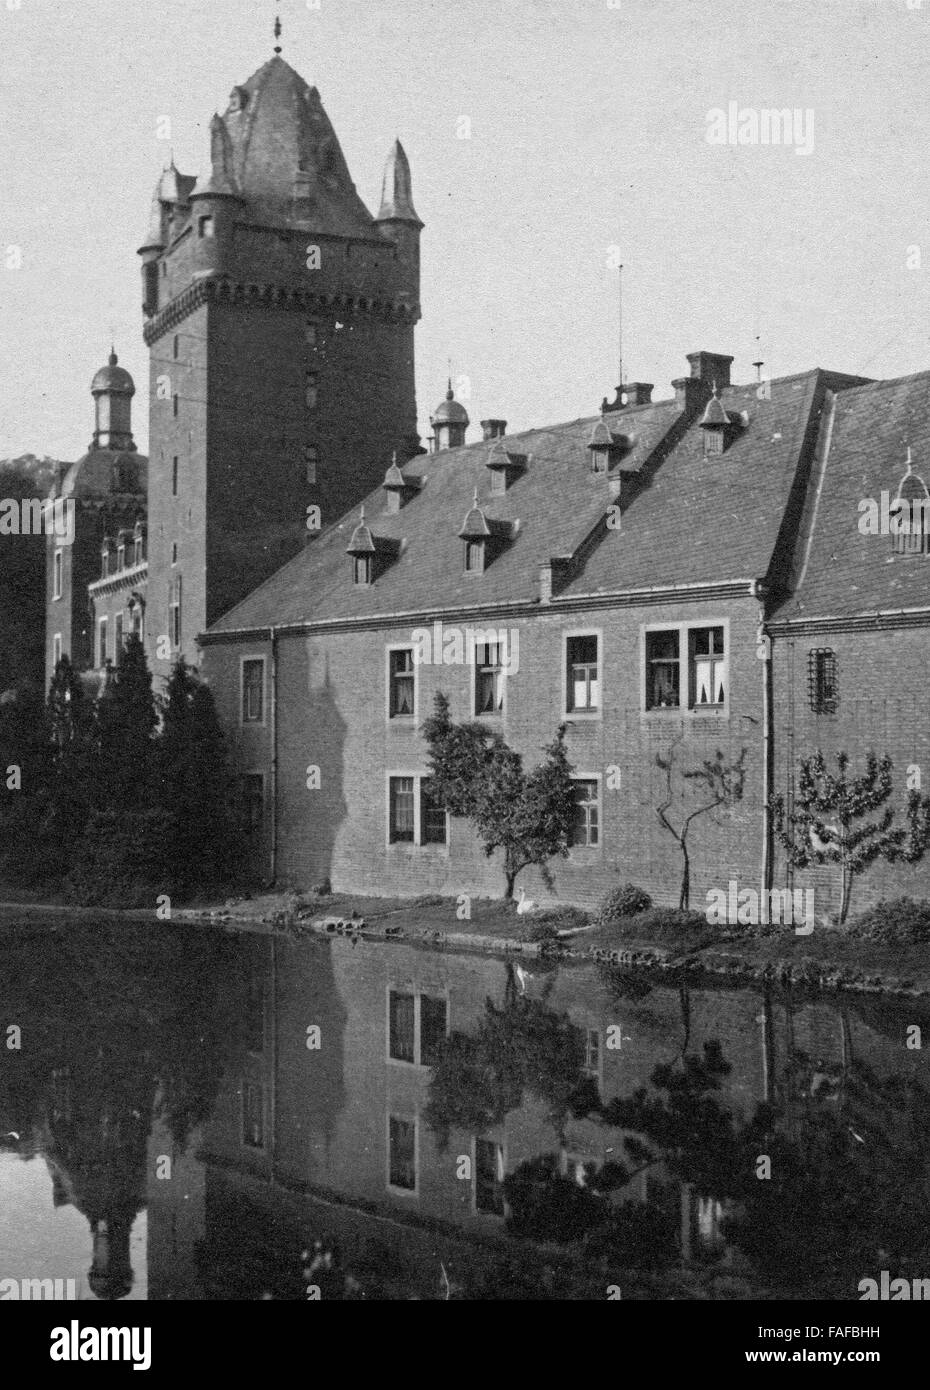 Schloss Harff, Ein Wasserschloss eine der Erft in Morken Harff, Einem Stadtteil von Bedburg, Deutschland 1930er Jahre. Harff Schloss am Fluss Erft in der Nähe von Bedburg, Deutschland der 1930er Jahre. Stockfoto